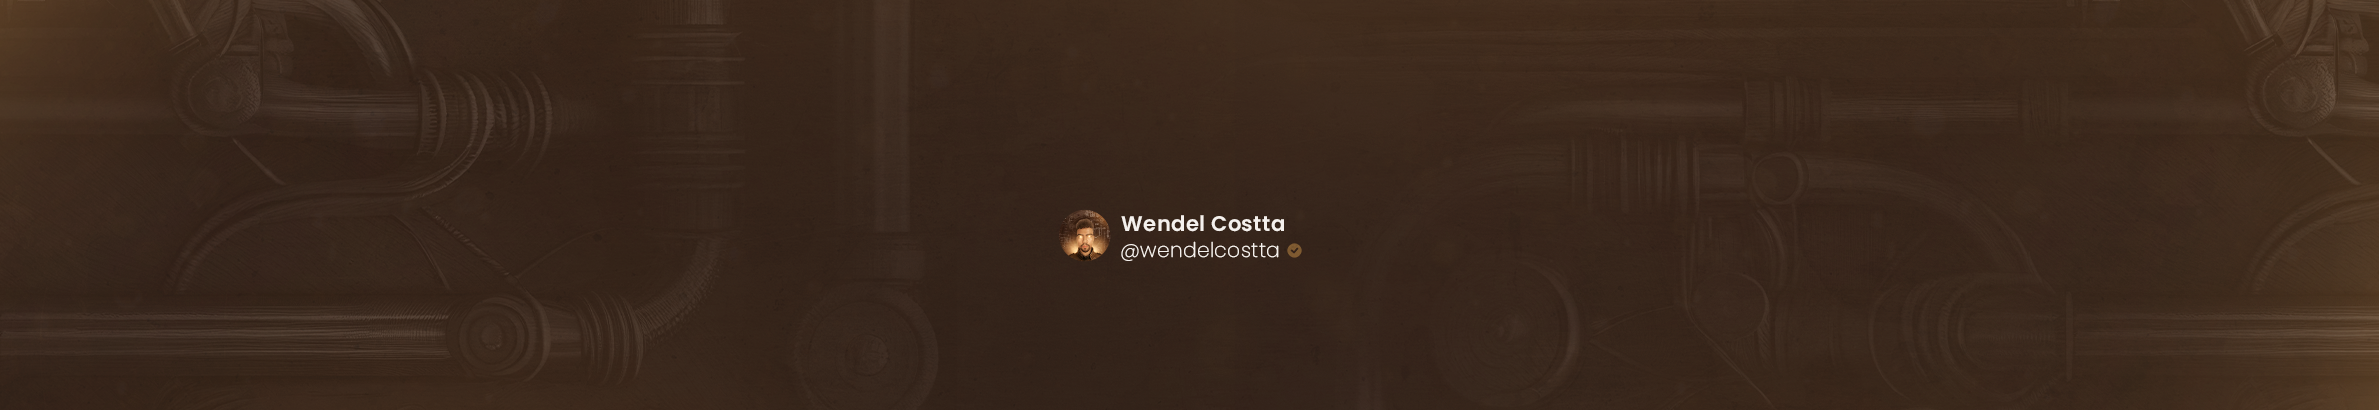 Banner de perfil de Wendel Costta